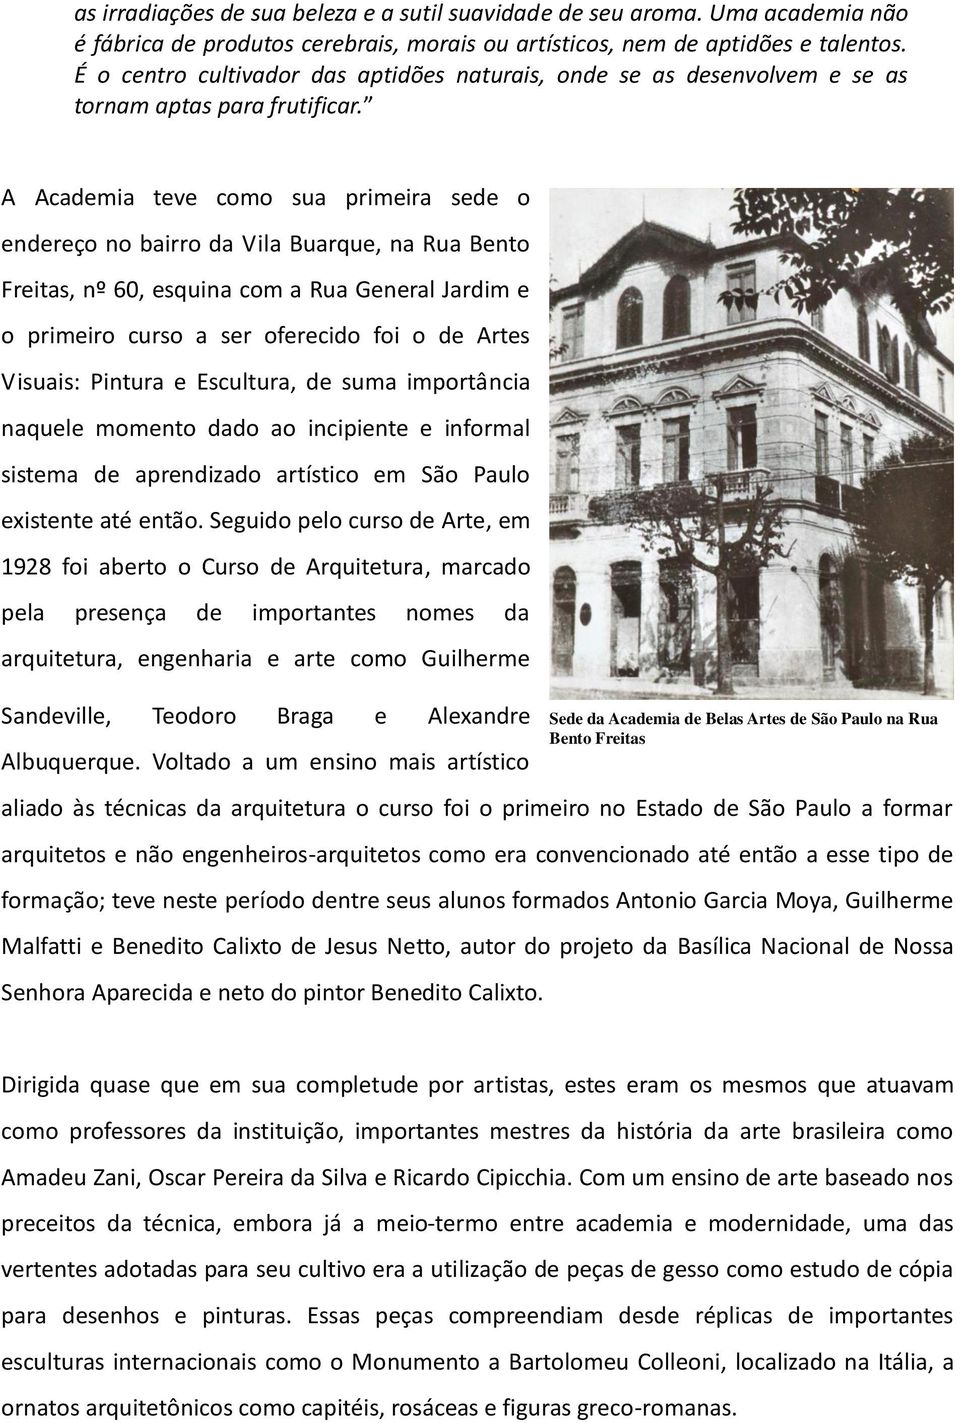 A Academia teve como sua primeira sede o endereço no bairro da Vila Buarque, na Rua Bento Freitas, nº 60, esquina com a Rua General Jardim e o primeiro curso a ser oferecido foi o de Artes Visuais: